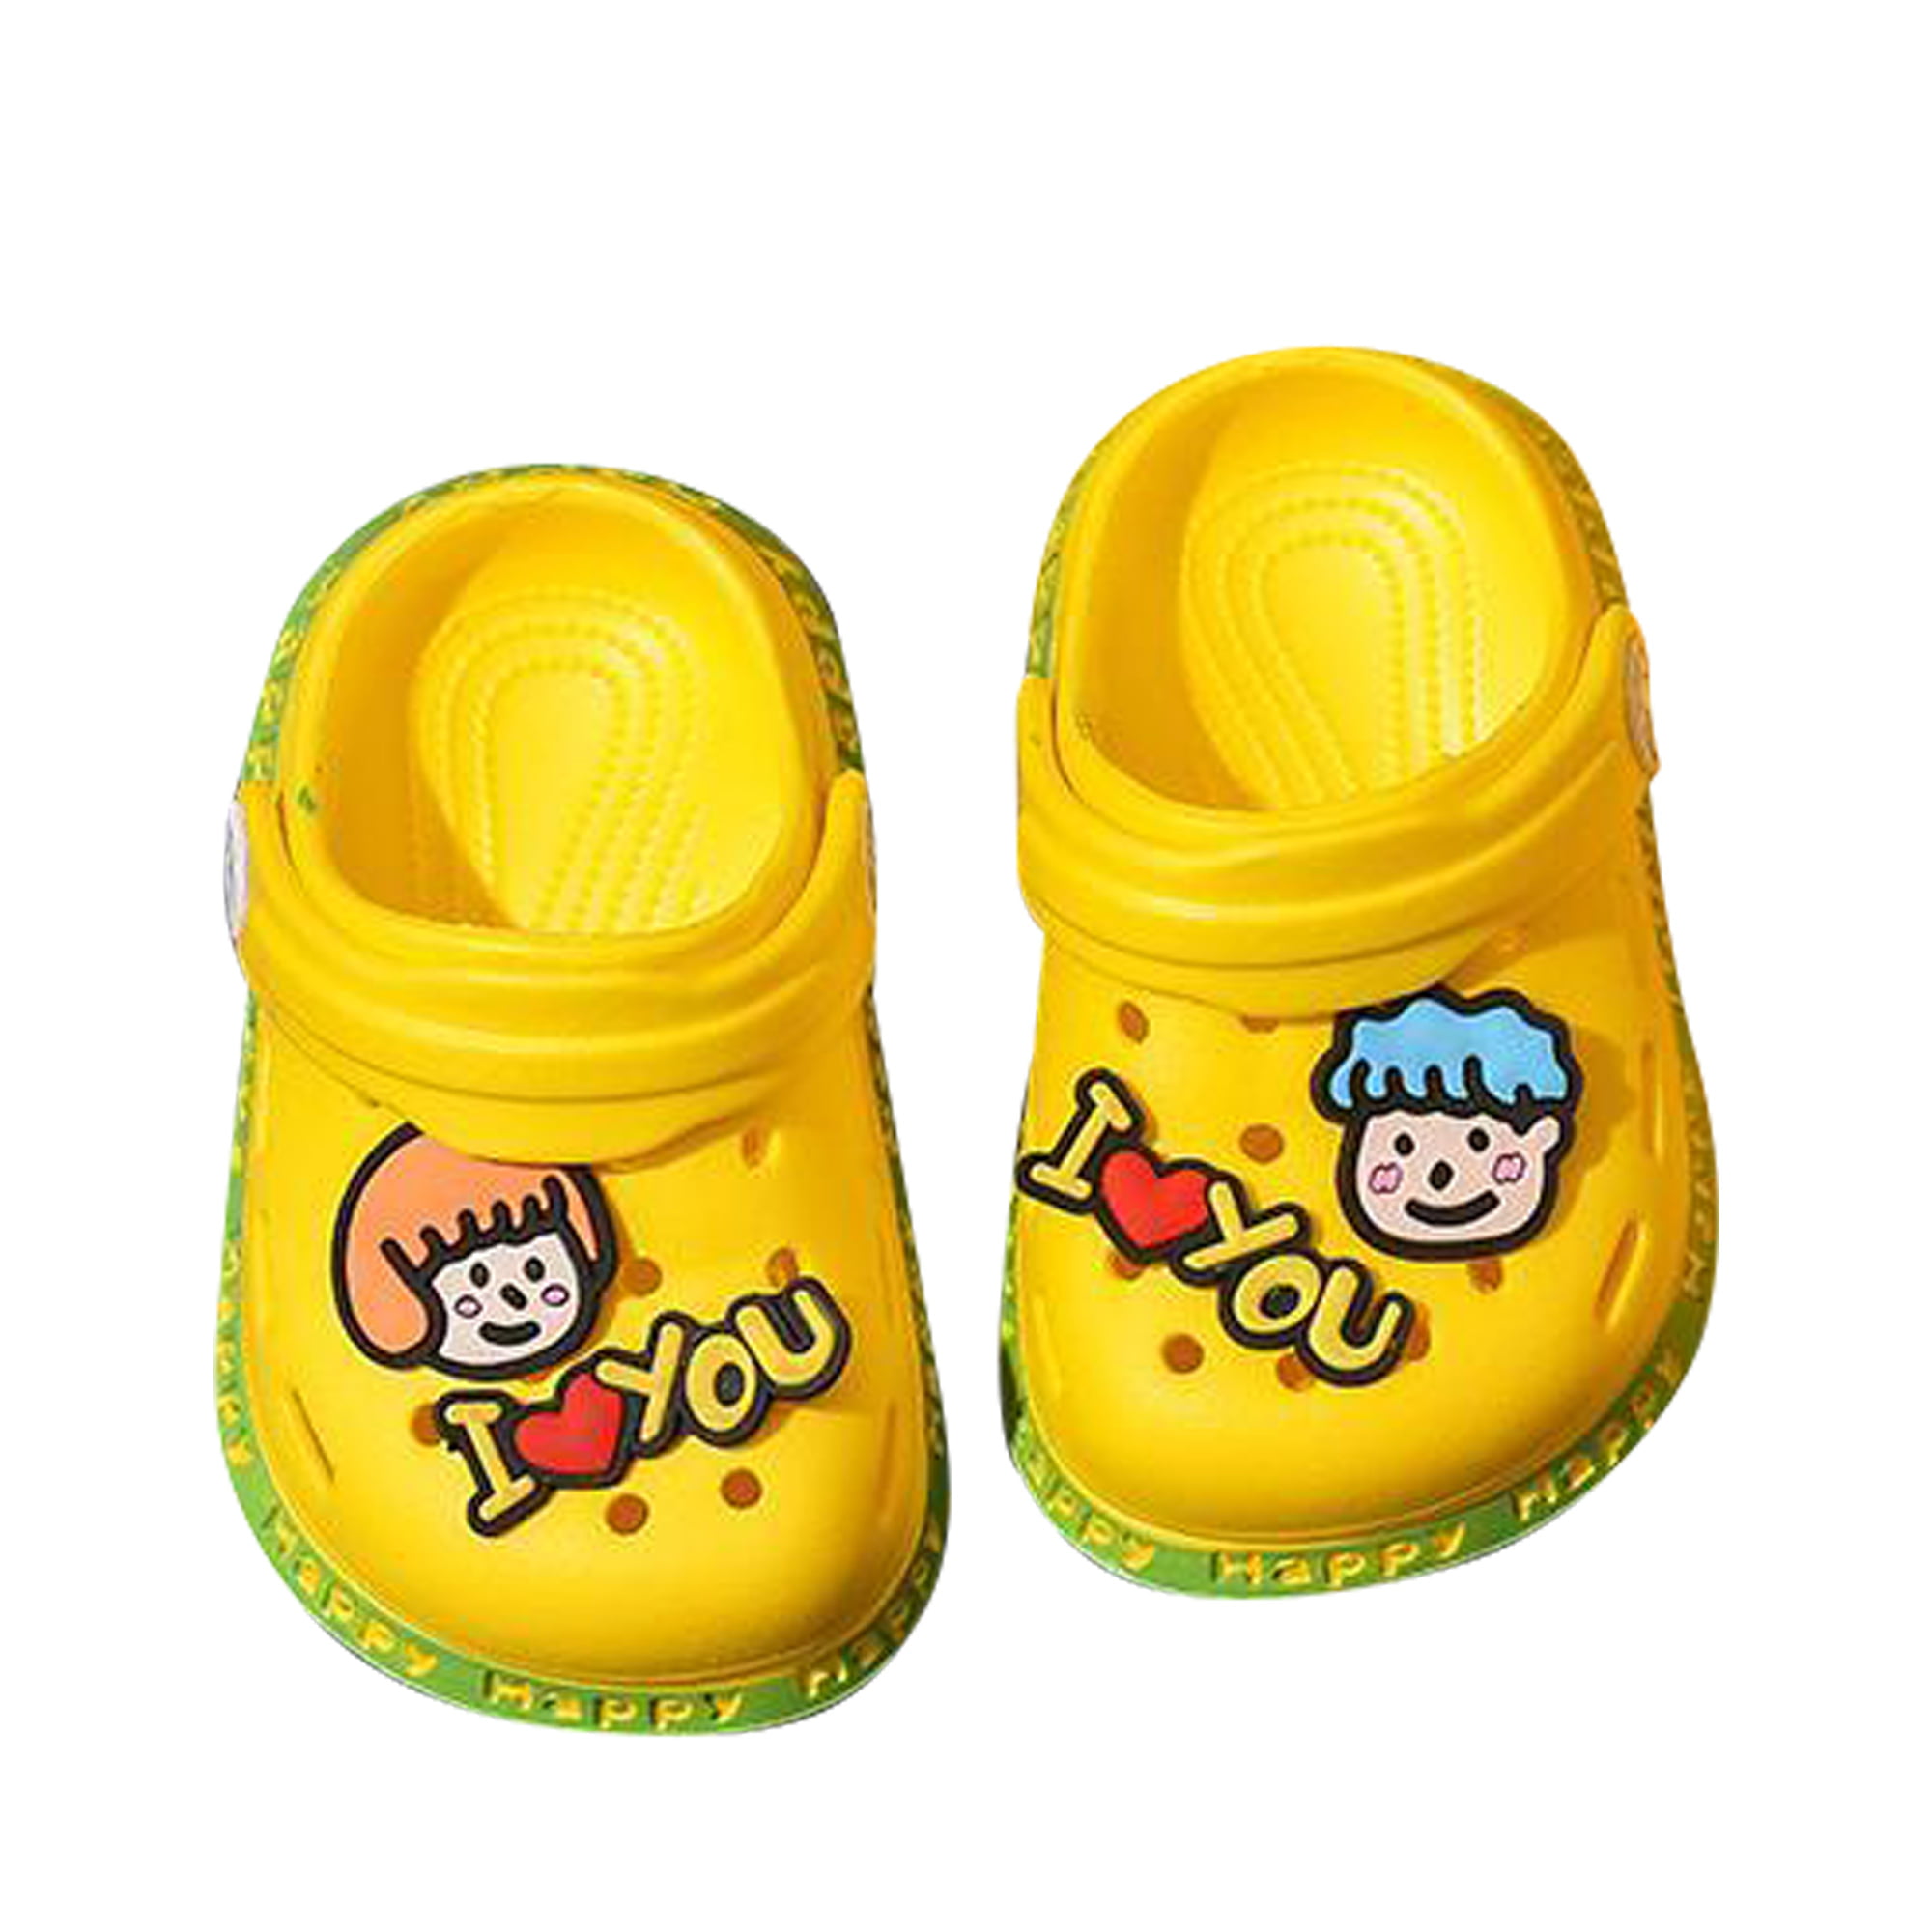 Little Kids Garden Clogs Boys and Girls Classic Clog Unisex Slippers Silent Sandals Hole Shoes Non-Slip Lightweight Children Summer Beach Shower Sandals 